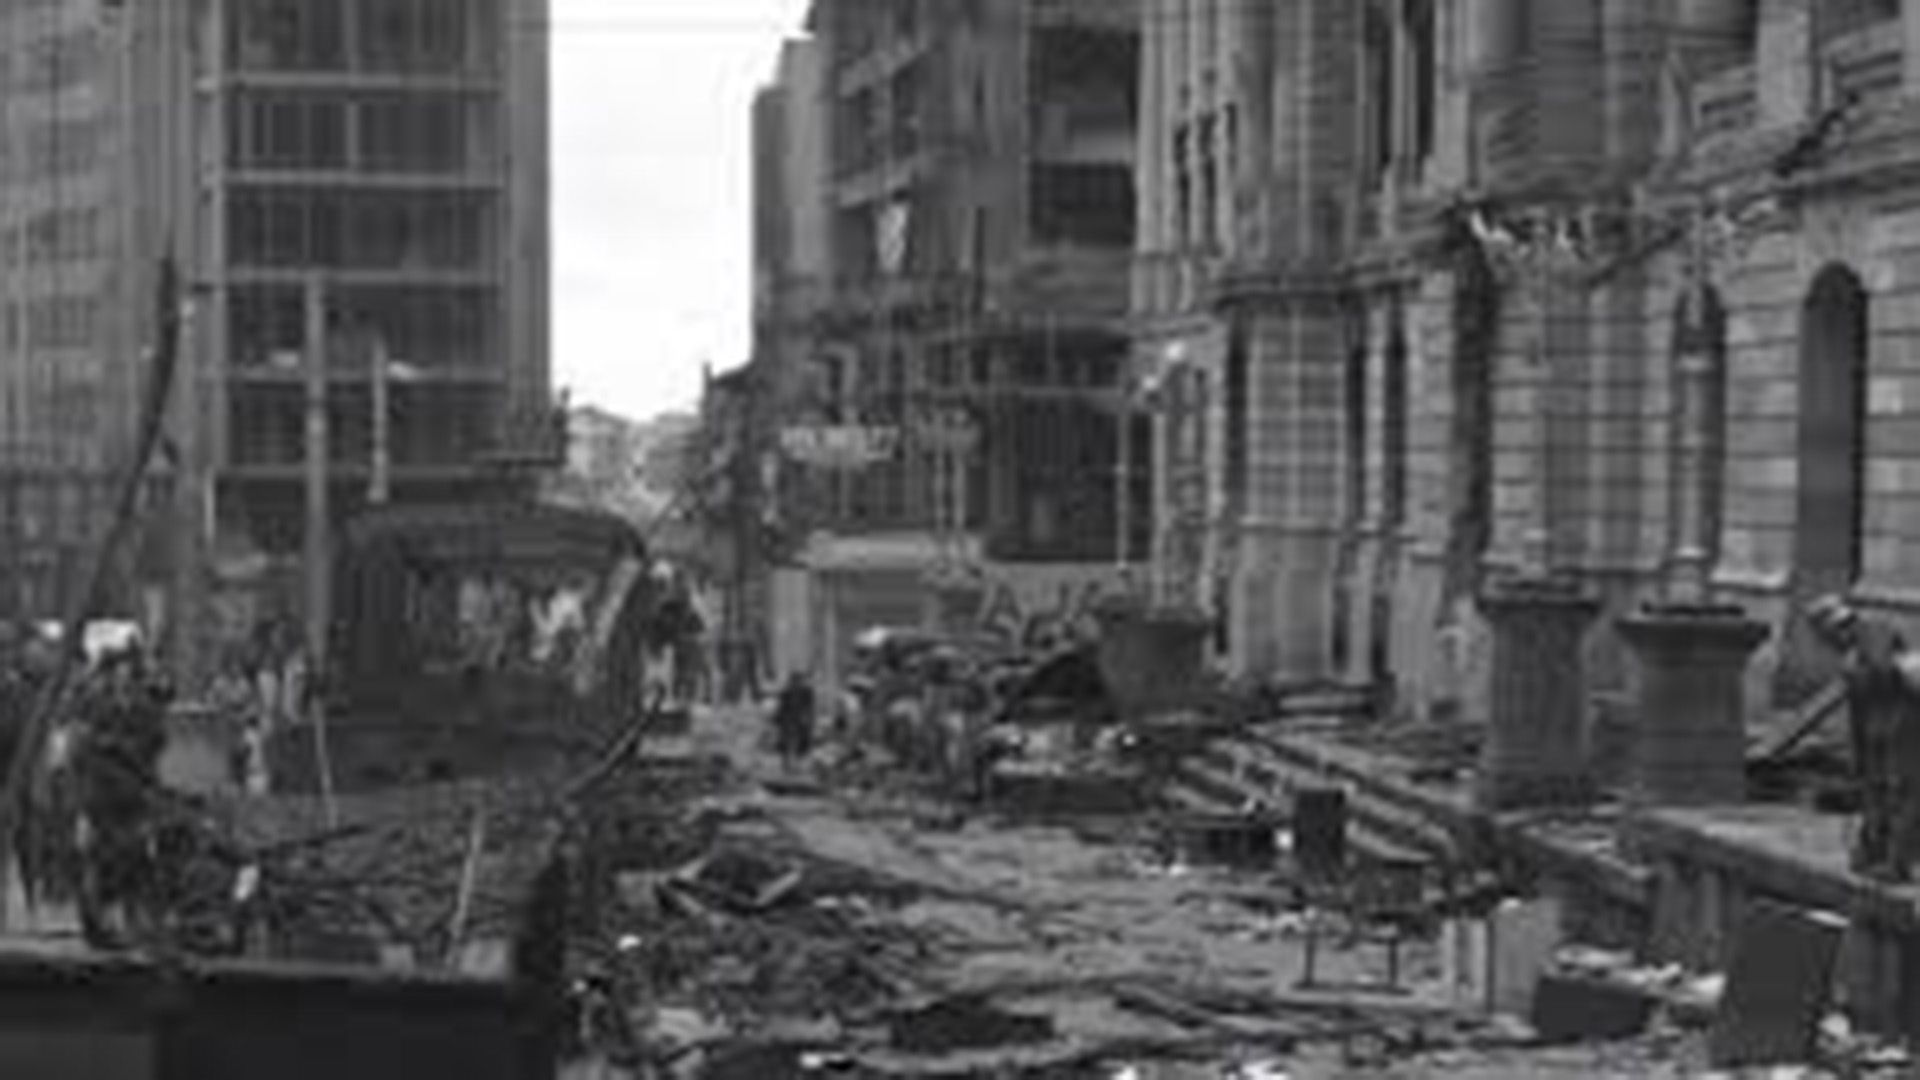 Las calles de Bogotá fueron destruidas en el marco de El Bogotazo